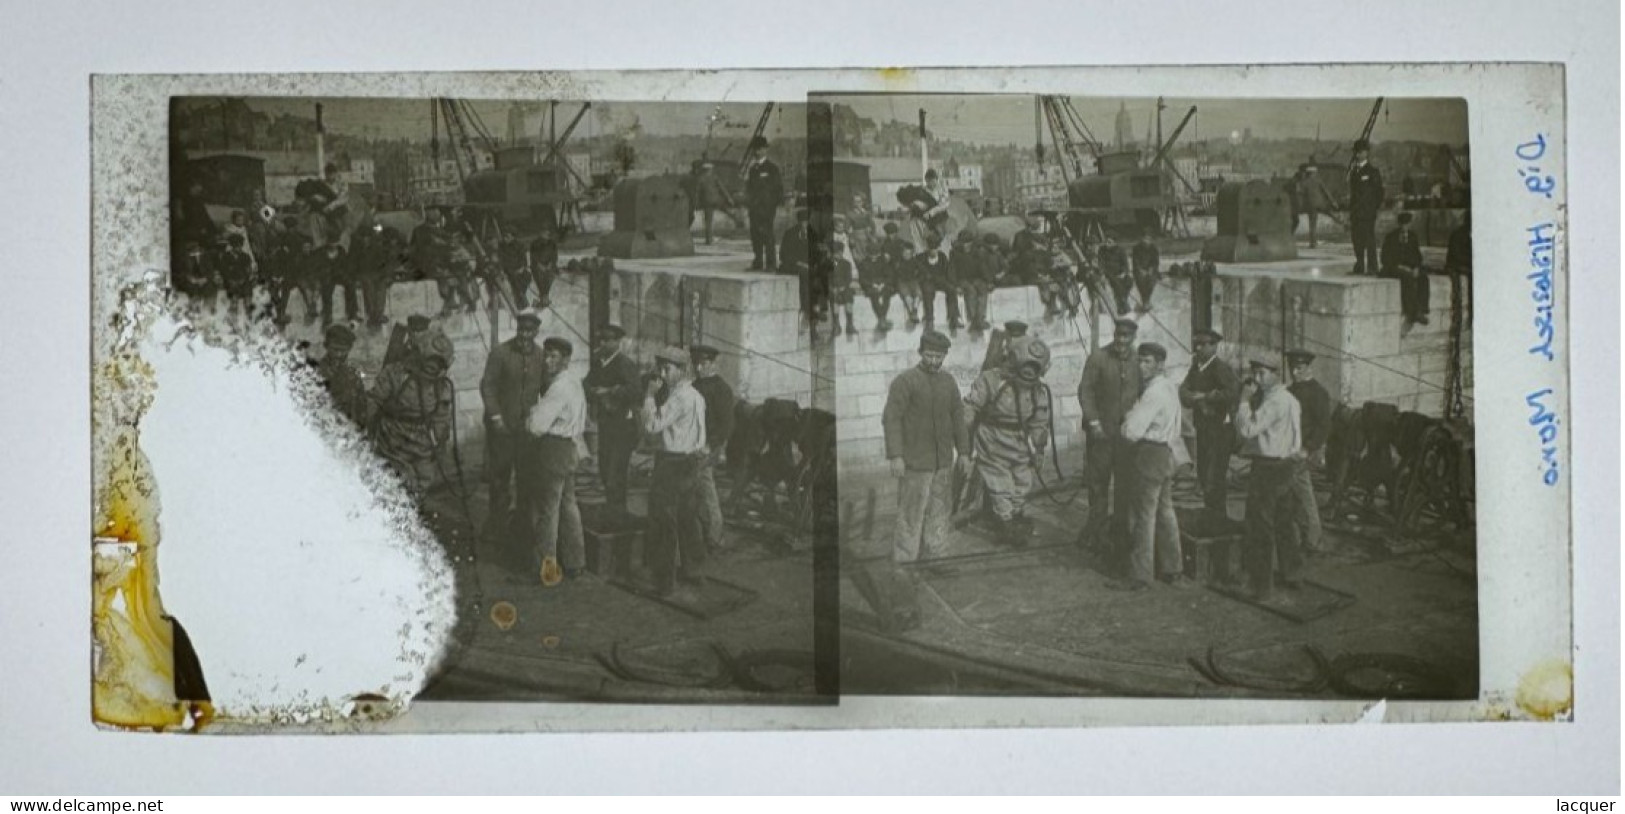 Photo Rare D'un Plongeur Dans Une Vieille Combinaison De Plongée, Boulogne Sur Mer C. 1900 - Photos Stéréoscopiques